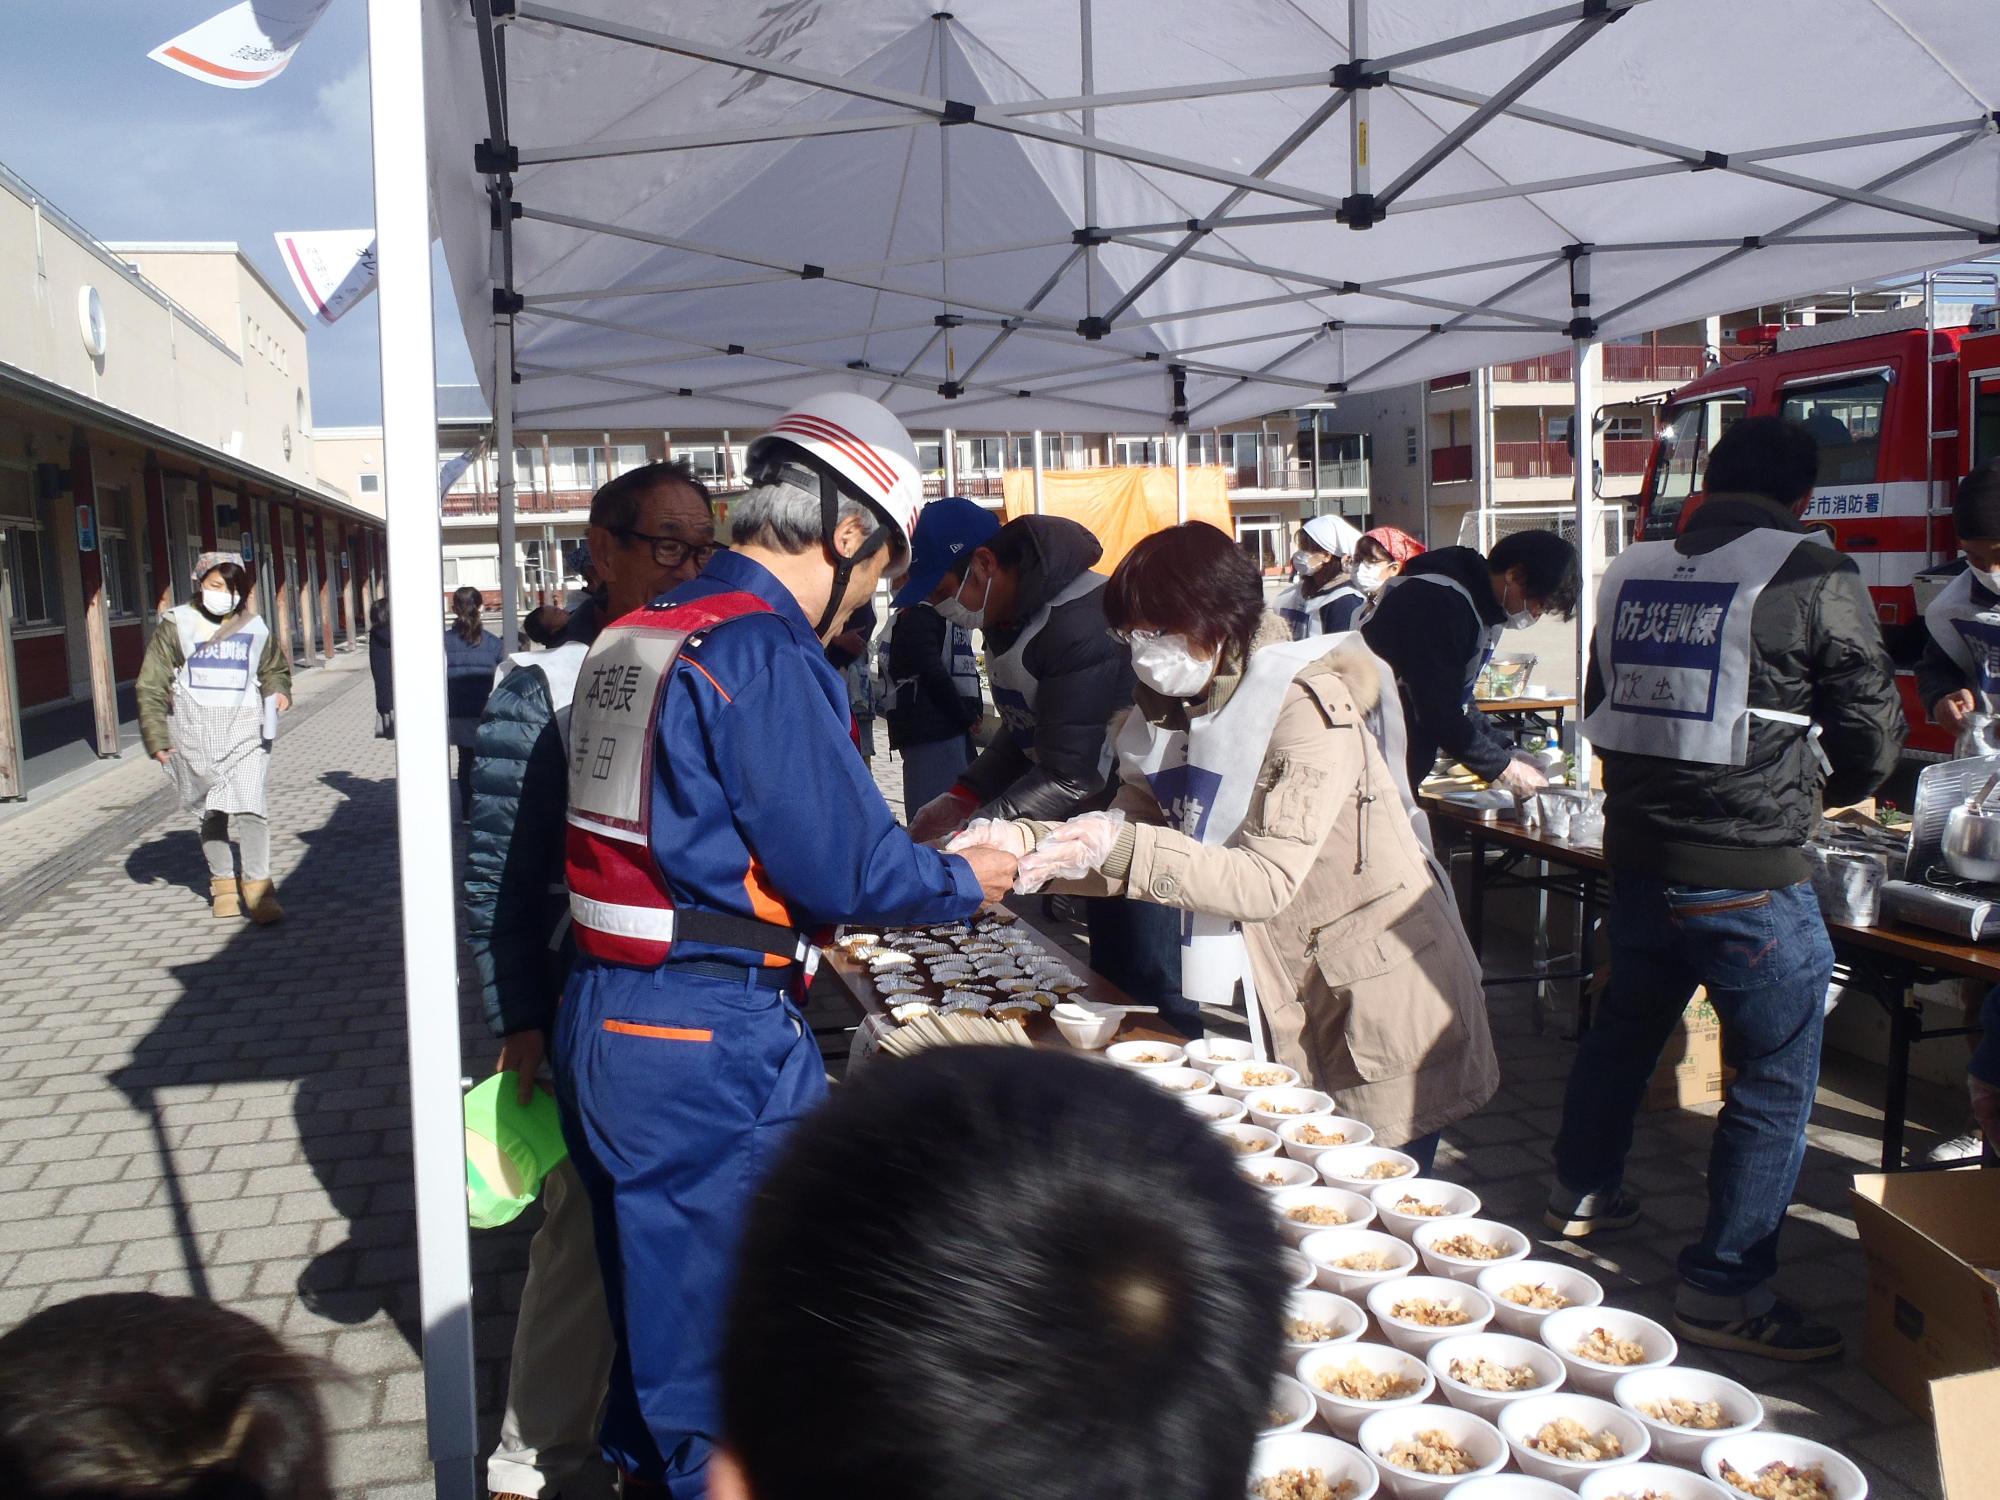 炊き出しコーナーのテーブルにご飯やお菓子が並べられ、ヘルメットを被った役員が食料を受け取っている写真